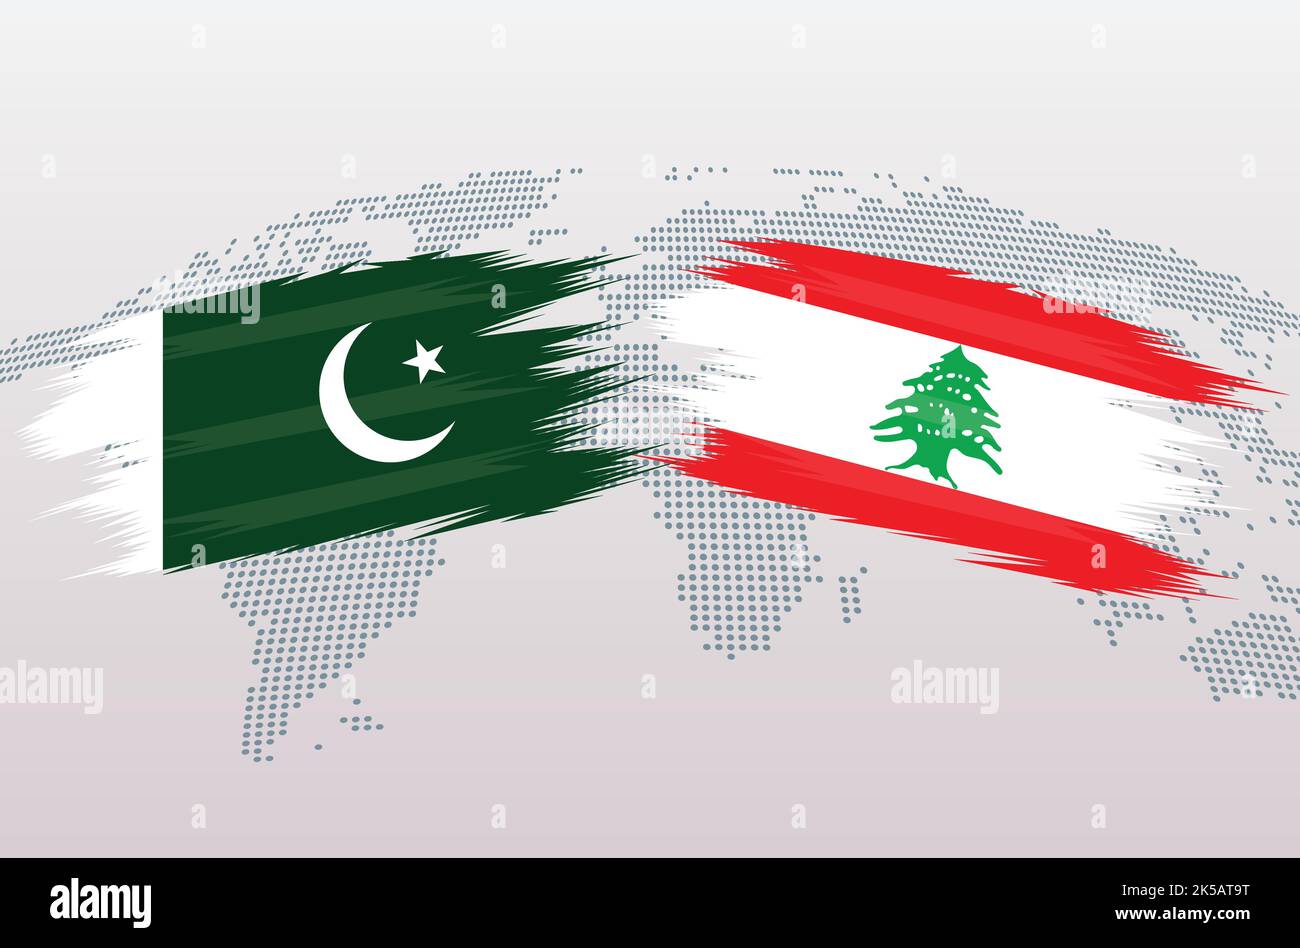 Bandiere Pakistan vs Libano. Bandiere della Repubblica islamica del Pakistan contro il Libano, isolate su sfondo grigio della mappa del mondo. Illustrazione vettoriale. Illustrazione Vettoriale